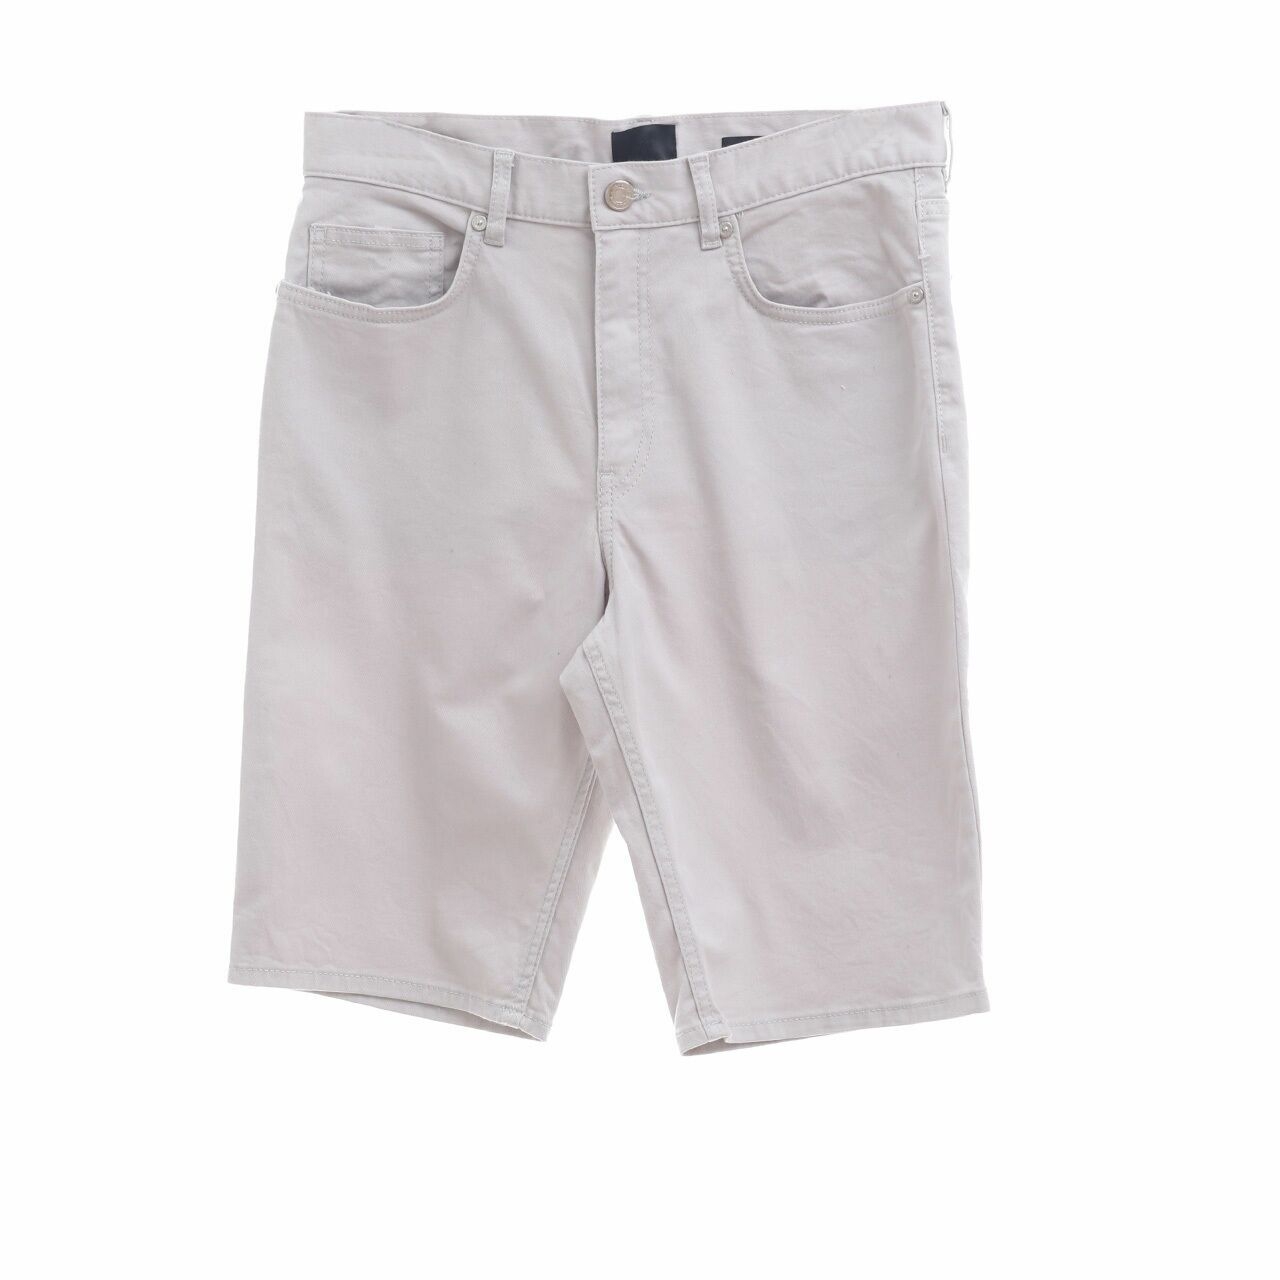 H&M Grey Slim Fit Short Pants